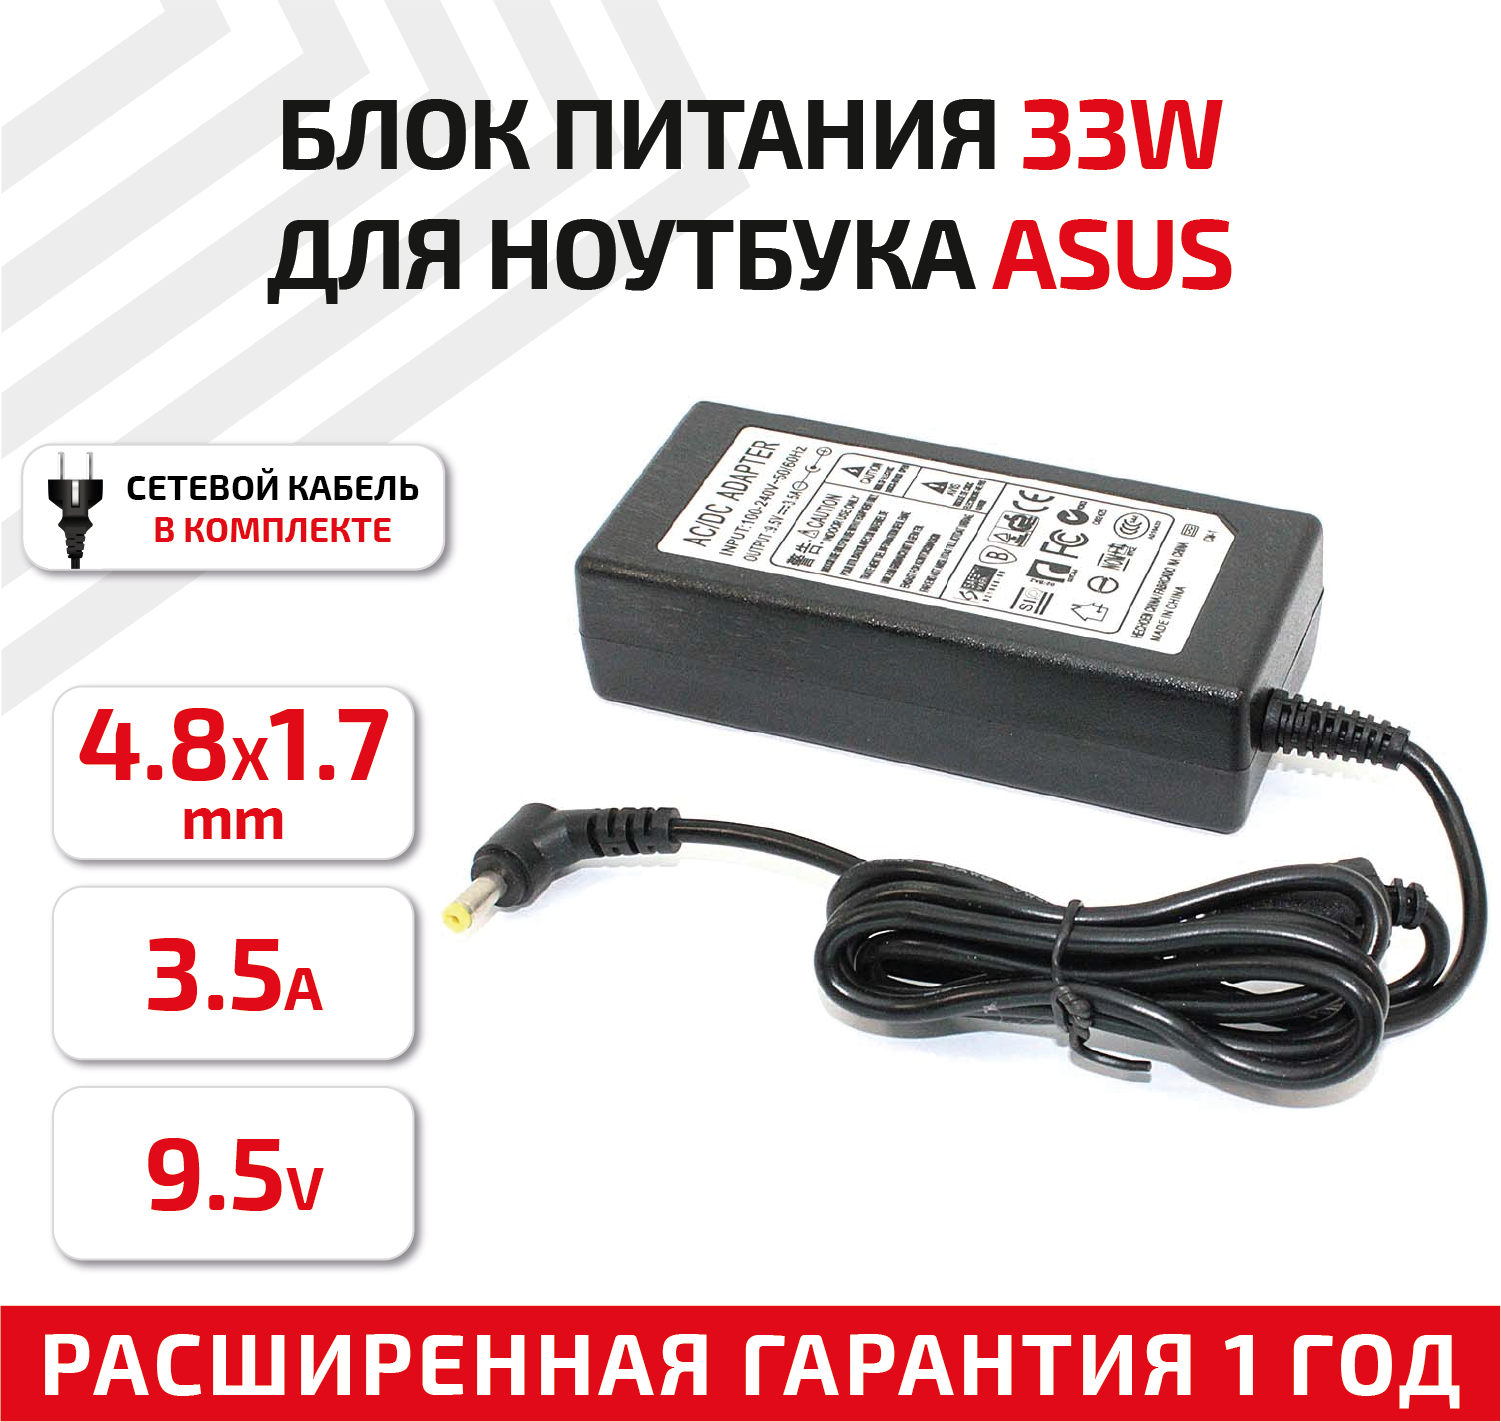 Зарядное устройство (блок питания/зарядка) для нетбука Asus 9.5В, 3.5А, 34Вт, 4.8x1.7мм